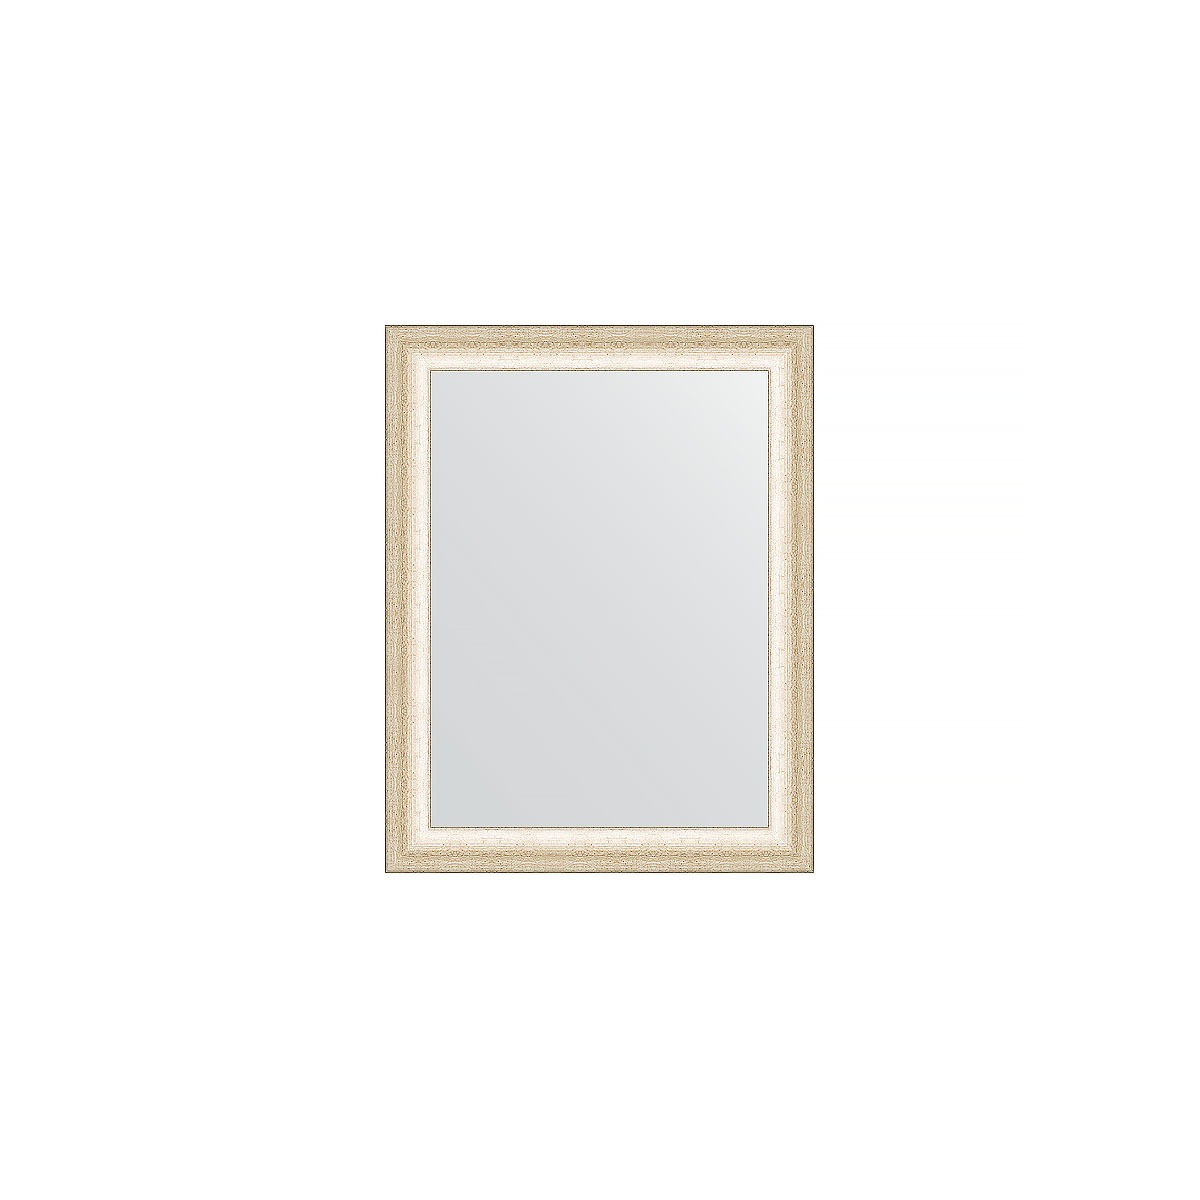 Зеркало в багетной раме Evoform состаренное серебро 37 мм 36х46 см зеркало с фацетом в багетной раме evoform травленое серебро 95 мм 58х88 см